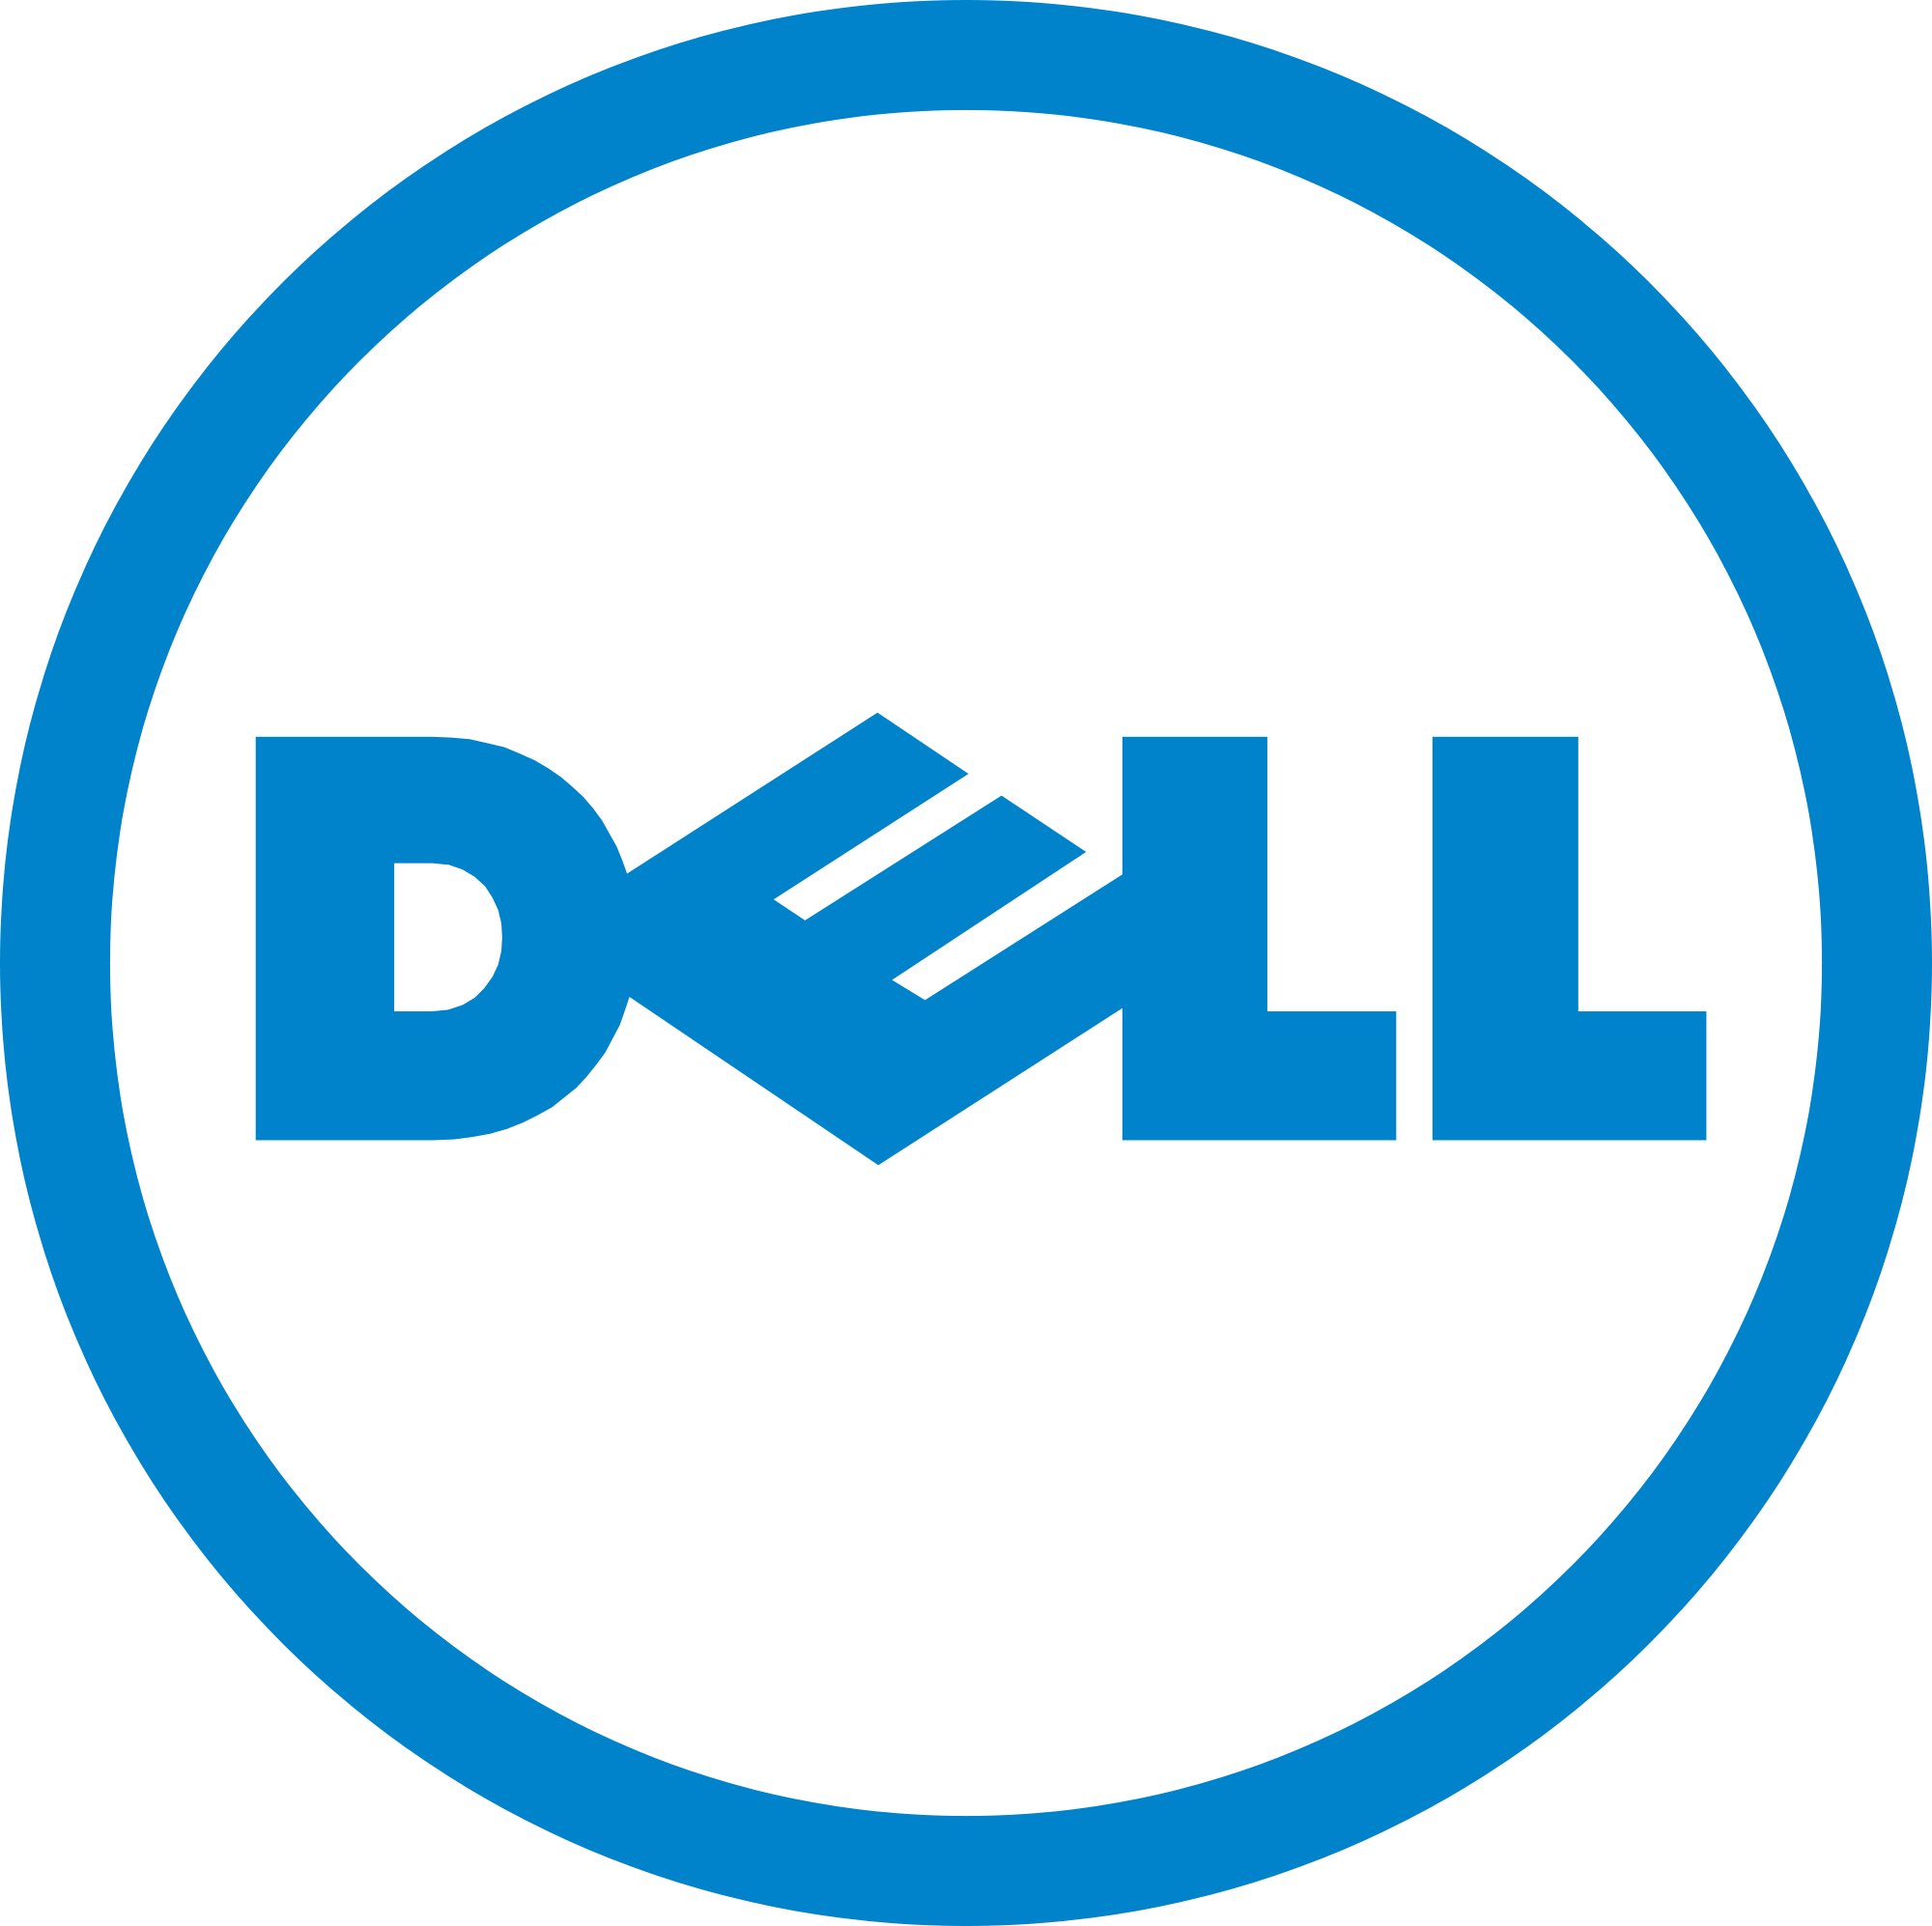 Изображение для производителя Dell